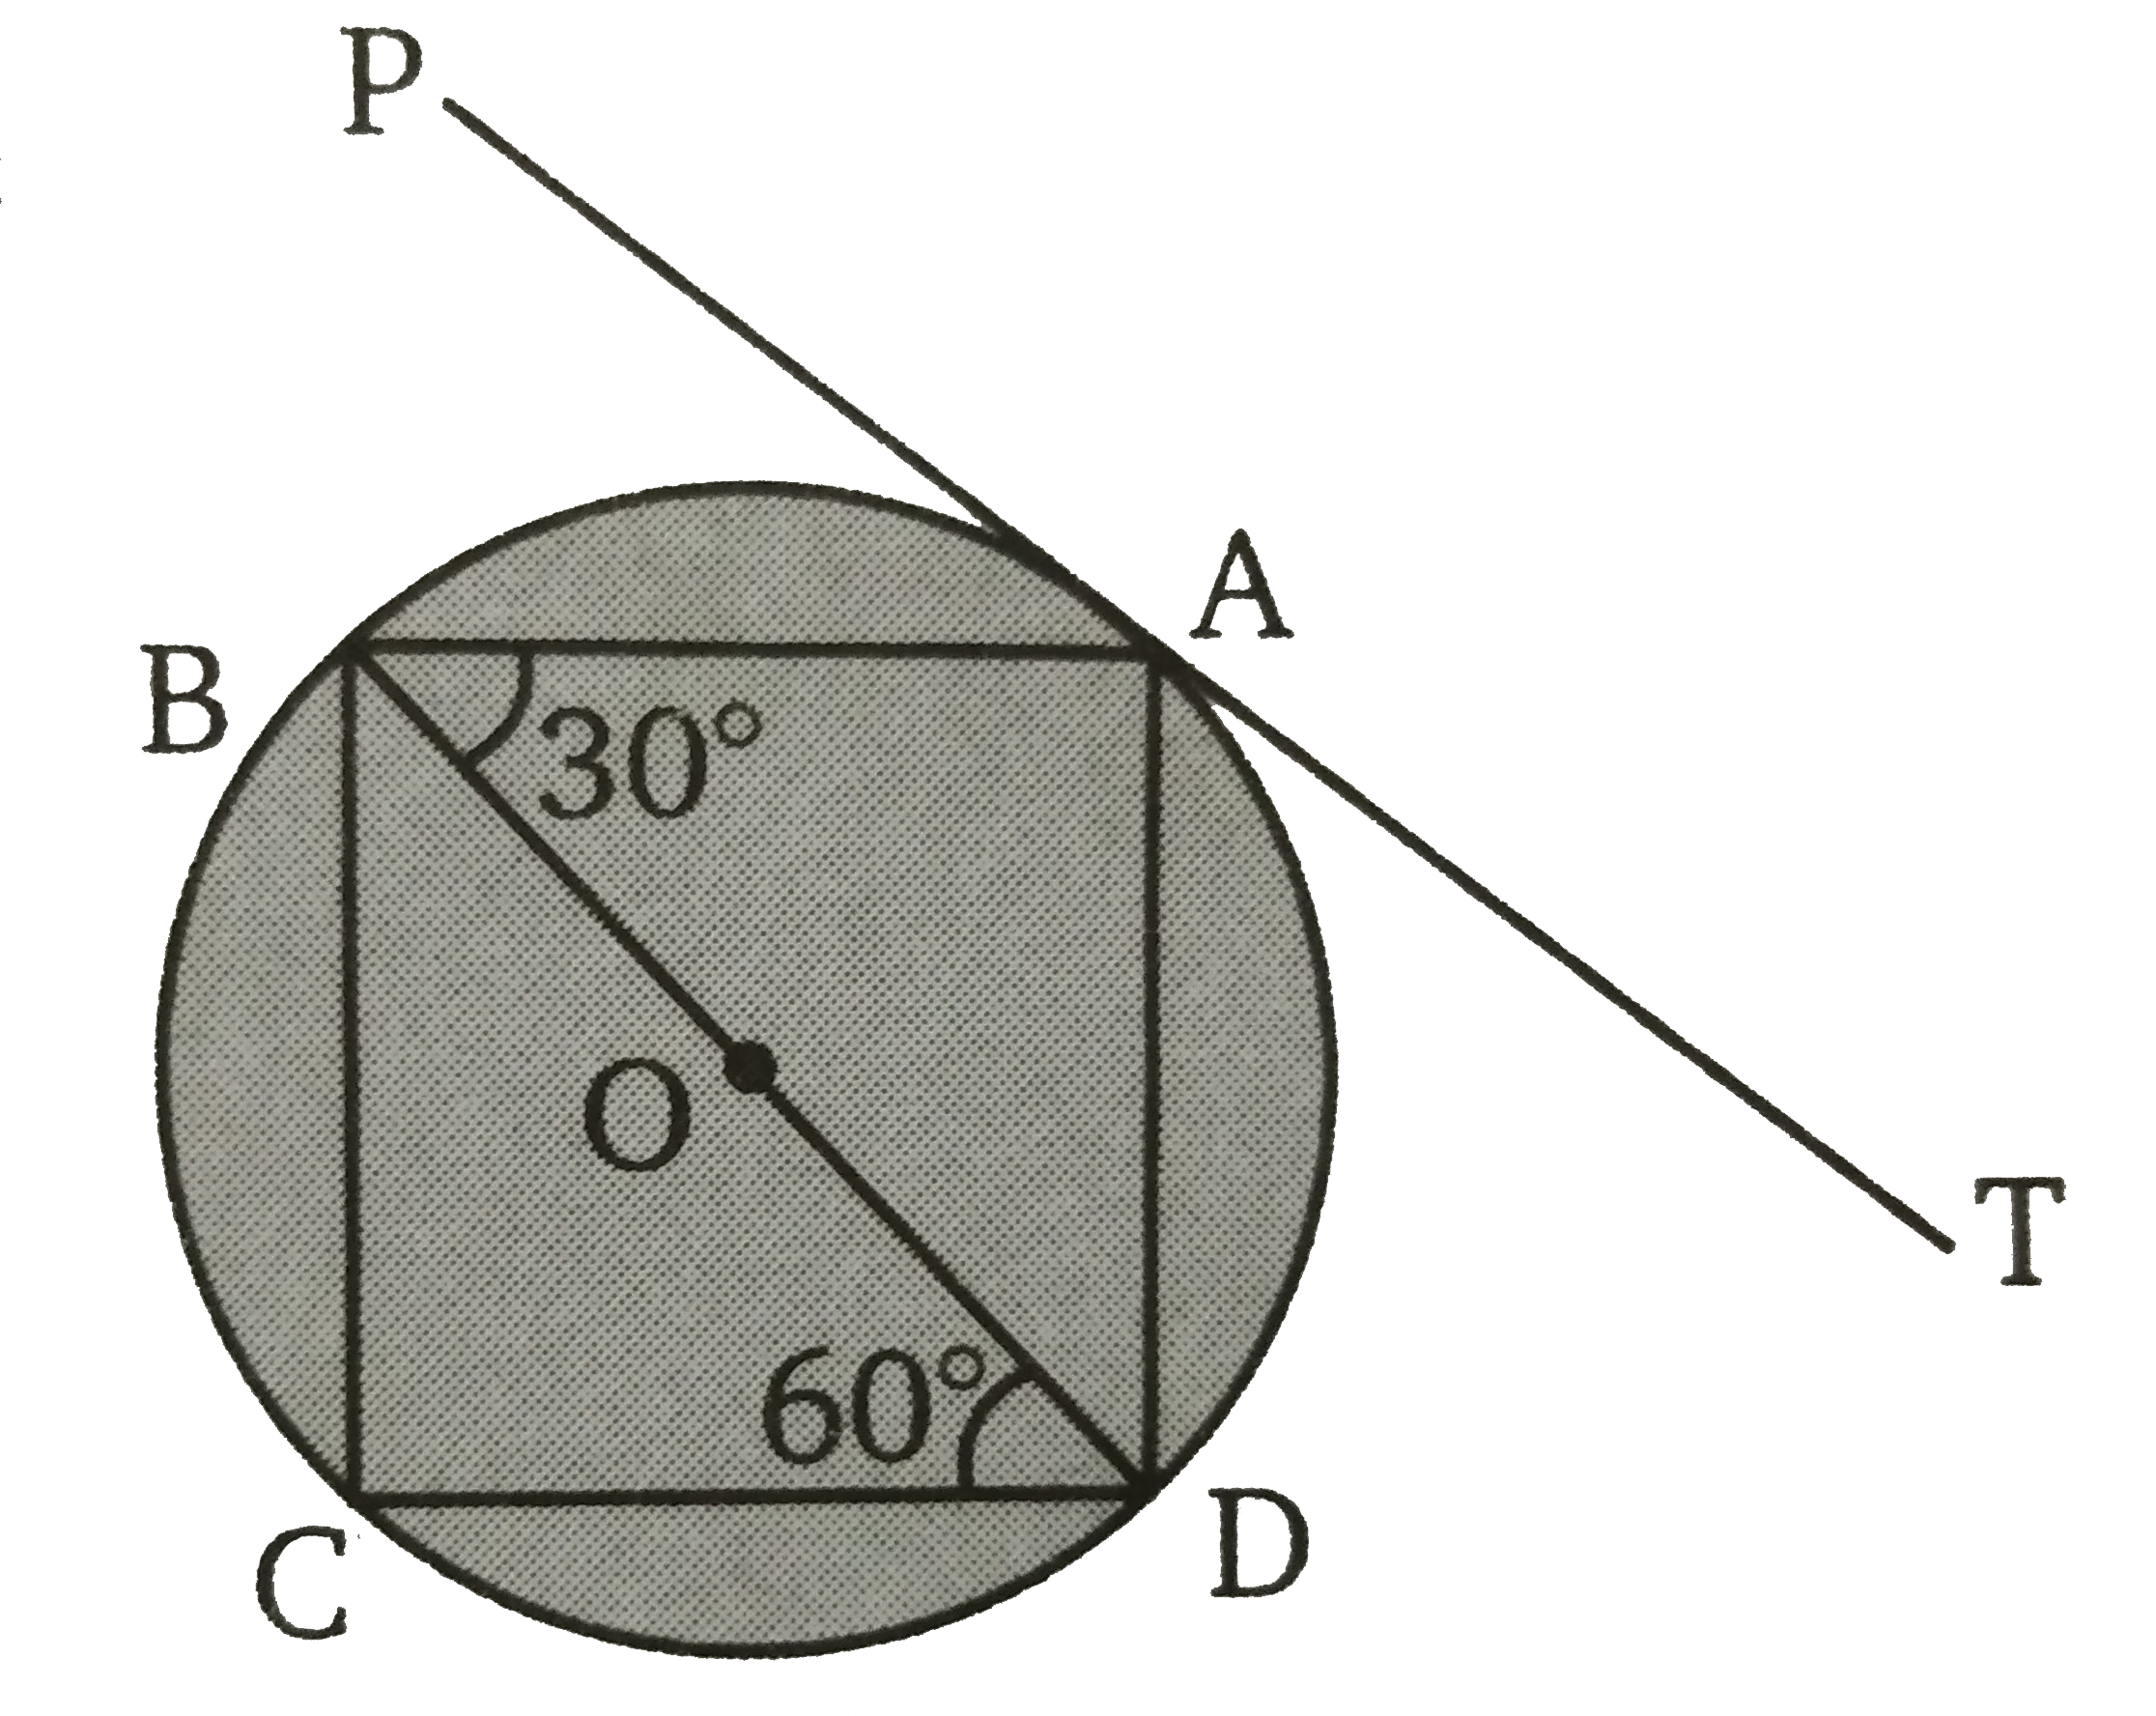 संलग्न चित्र में, ABCD  एक चक्रीय चतुर्भुज है तथा PAT  वृत्त पर एक स्पर्श रेखा है यदि BD  वृत्त का व्यास है तथा  angle ABD = 30^(@), angle BDC = 60^(@)  तब (i) angle TAD, (ii) angle BAD, (iii) angle PAB, (iv) angle BCD, (v) angle CBD  के मान ज्ञात कीजिए।